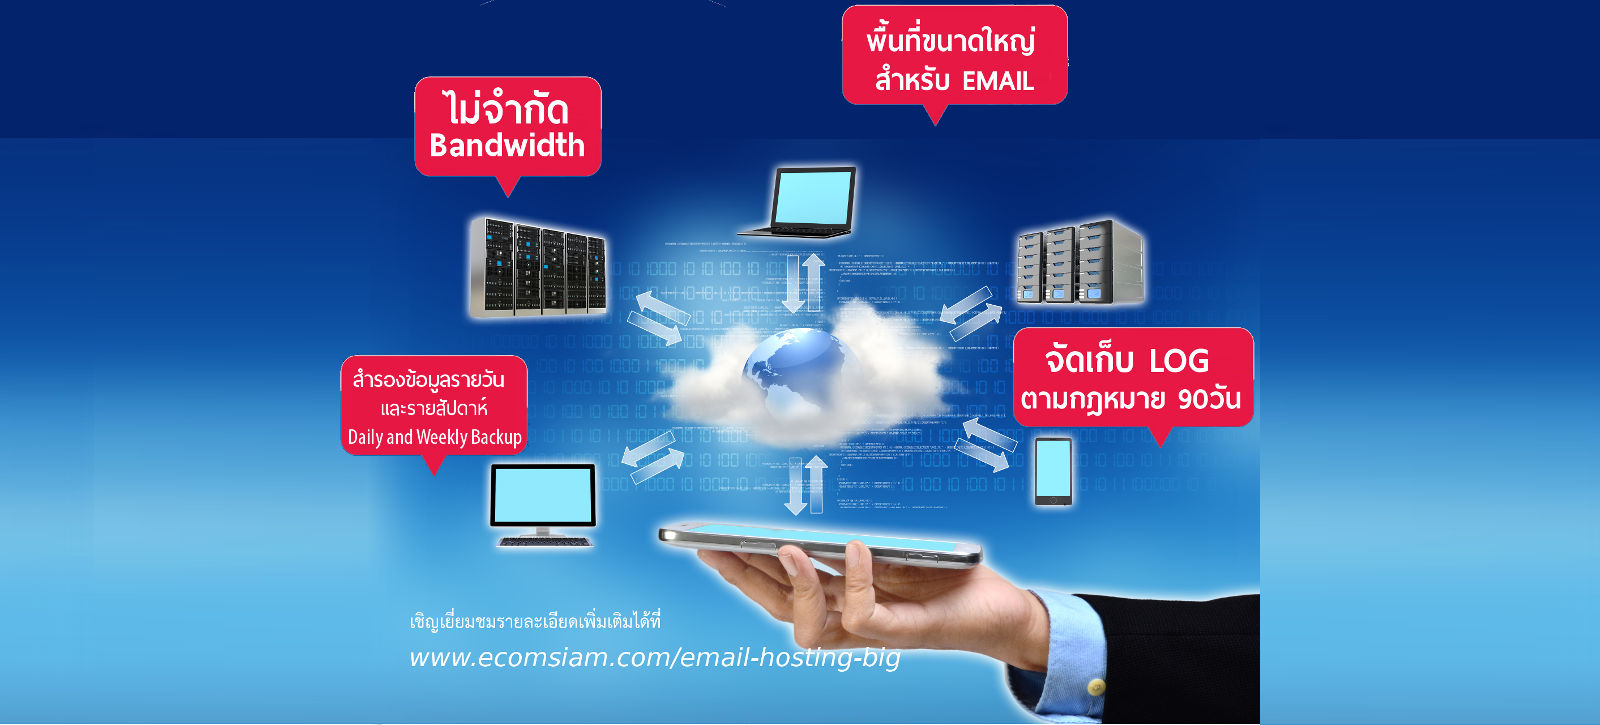 email hosting ไทย พื้นที่มาก ราคาไม่แพง คุ้มสุดๆ ฟรี SSL บริการ email hosting in thailand